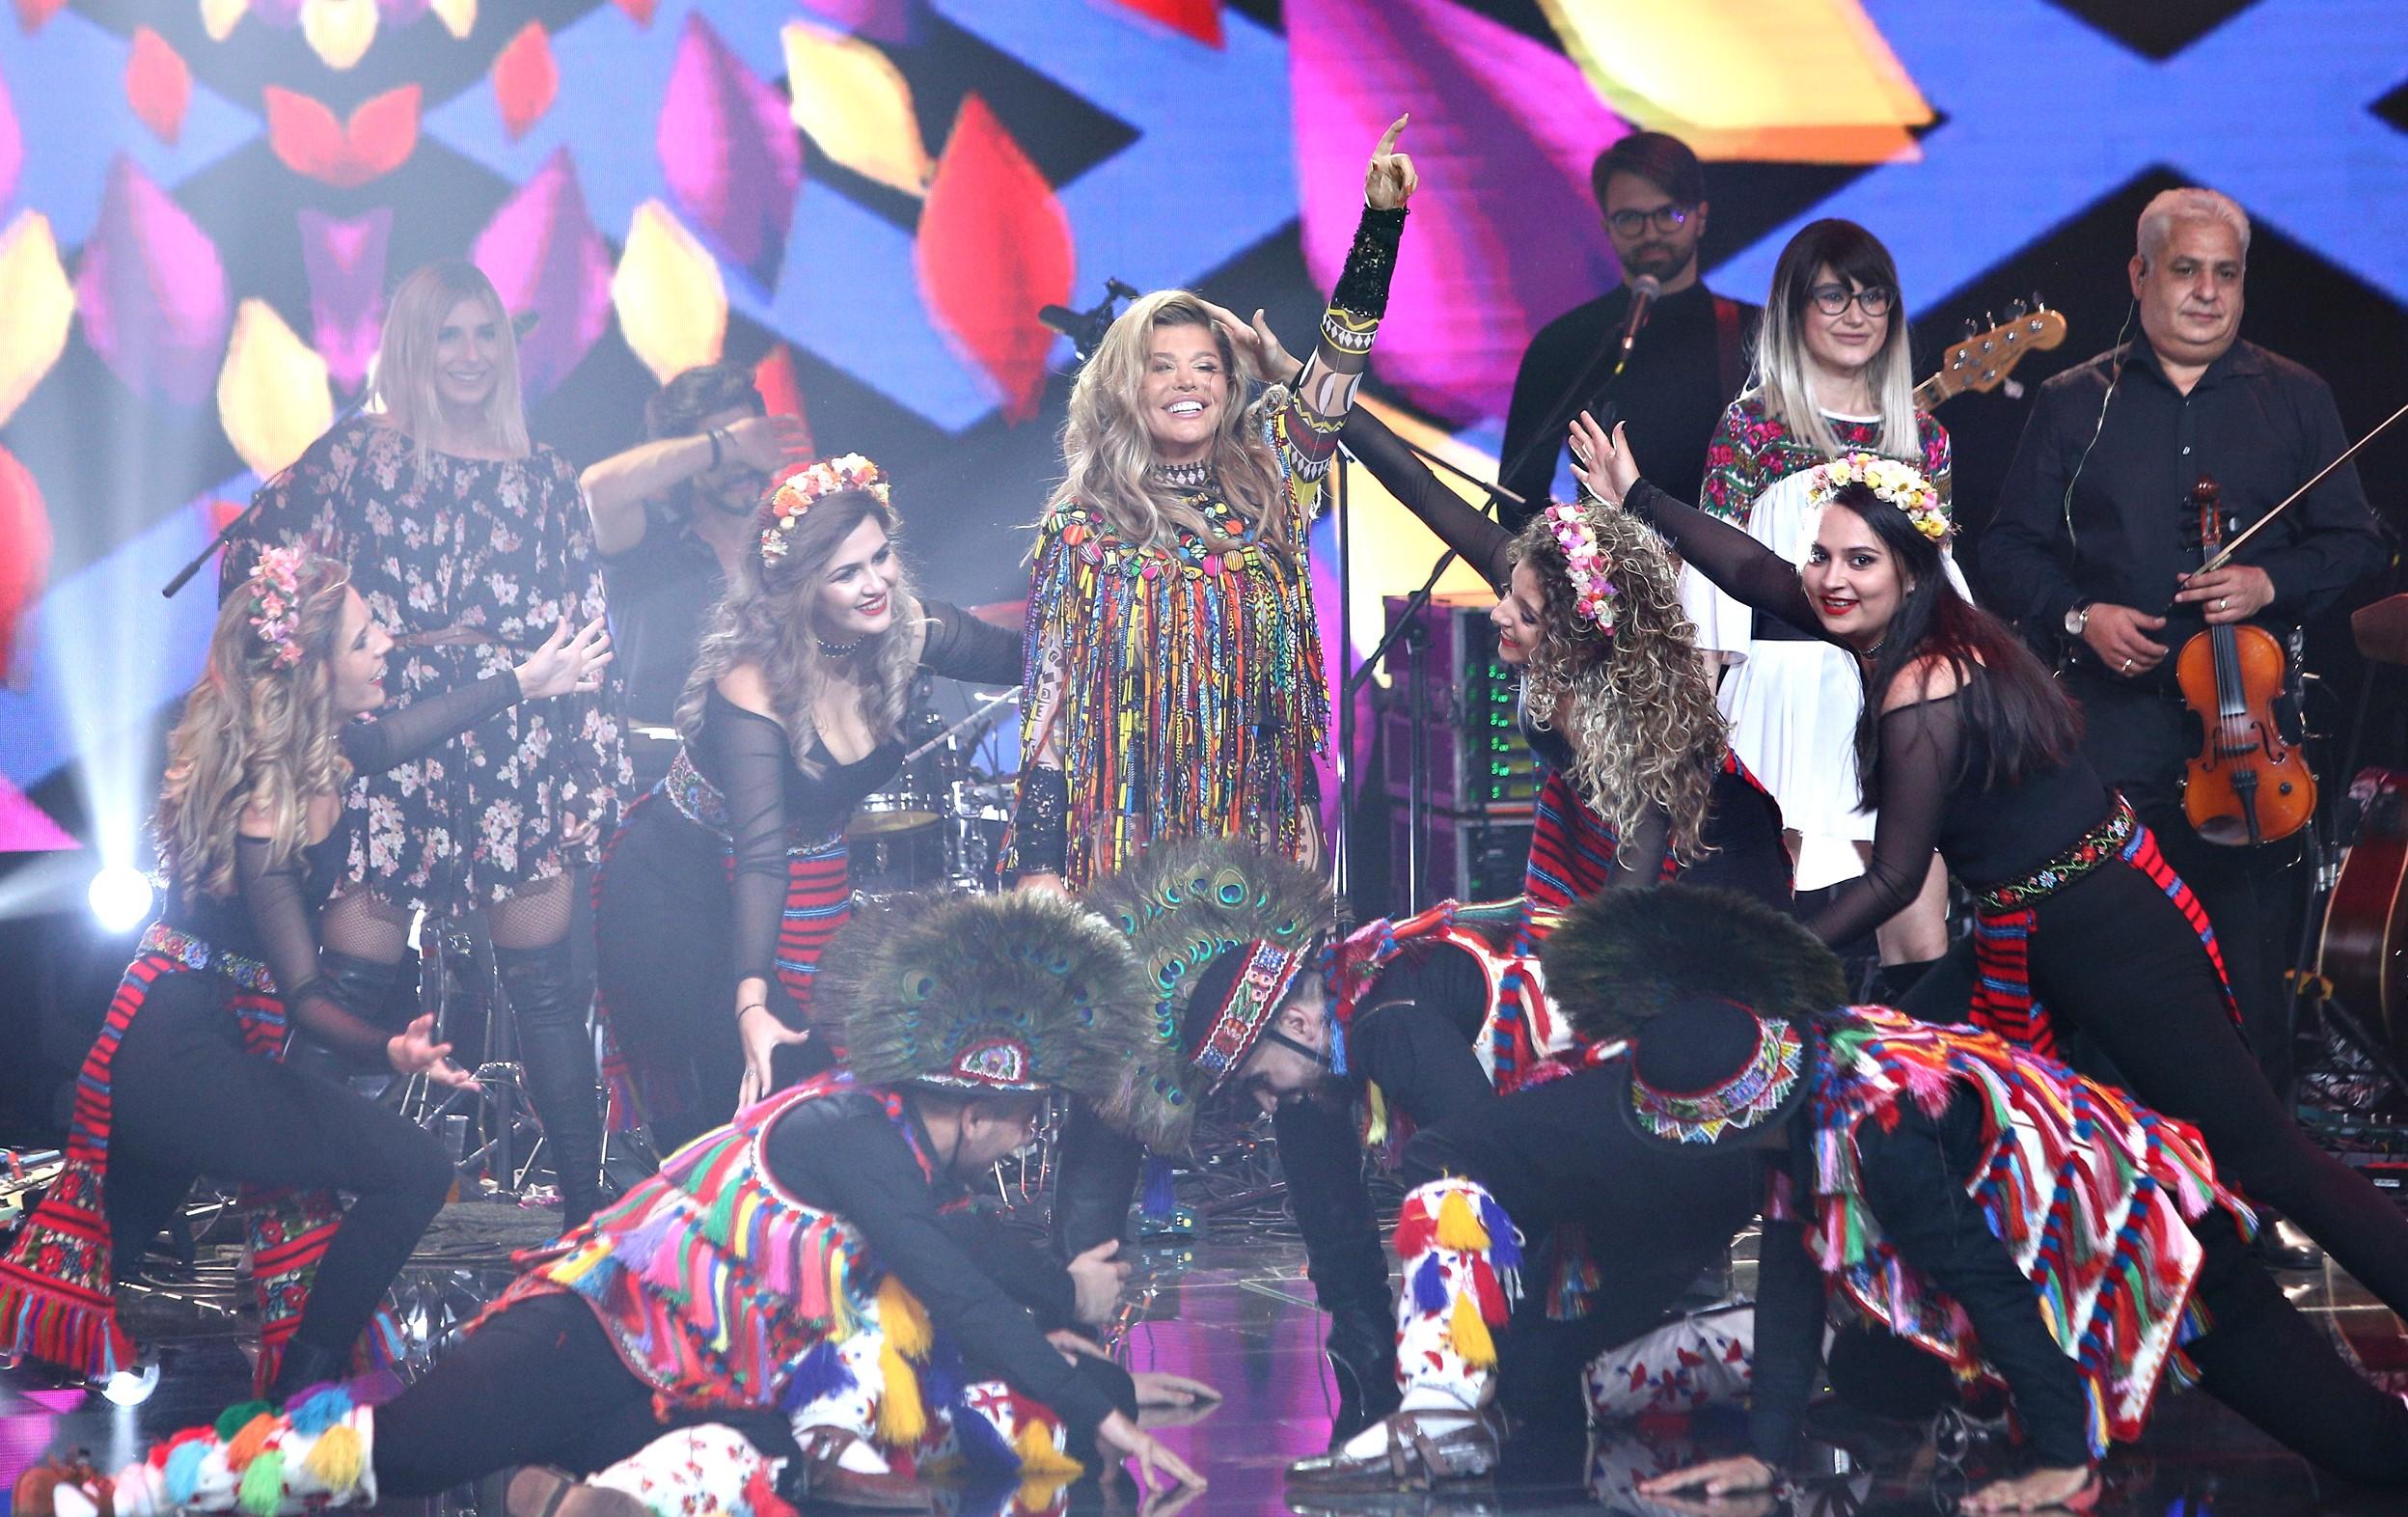 Finala X Factor 2020. Loredana a încins scena cu avanpremiera concertului “Agurida”. Momentul unic care i-a impresionat pe toți